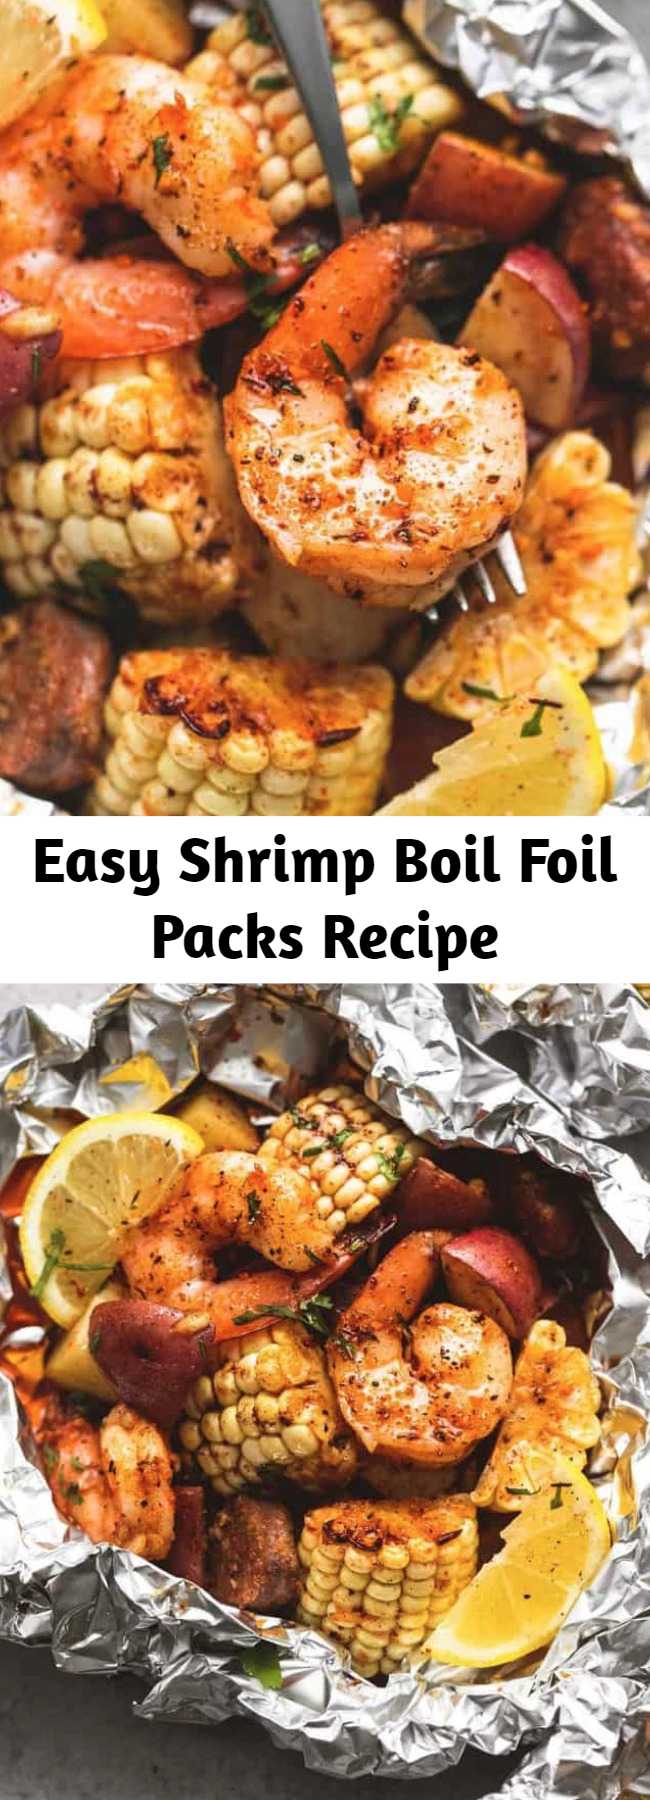 Easy Shrimp Boil Foil Packs Recipe - Easy, tasty shrimp boil foil packs baked or grilled with summer veggies, homemade seasoning, fresh lemon, and brown butter sauce. The BEST and easiest way to make shrimp boil at home!